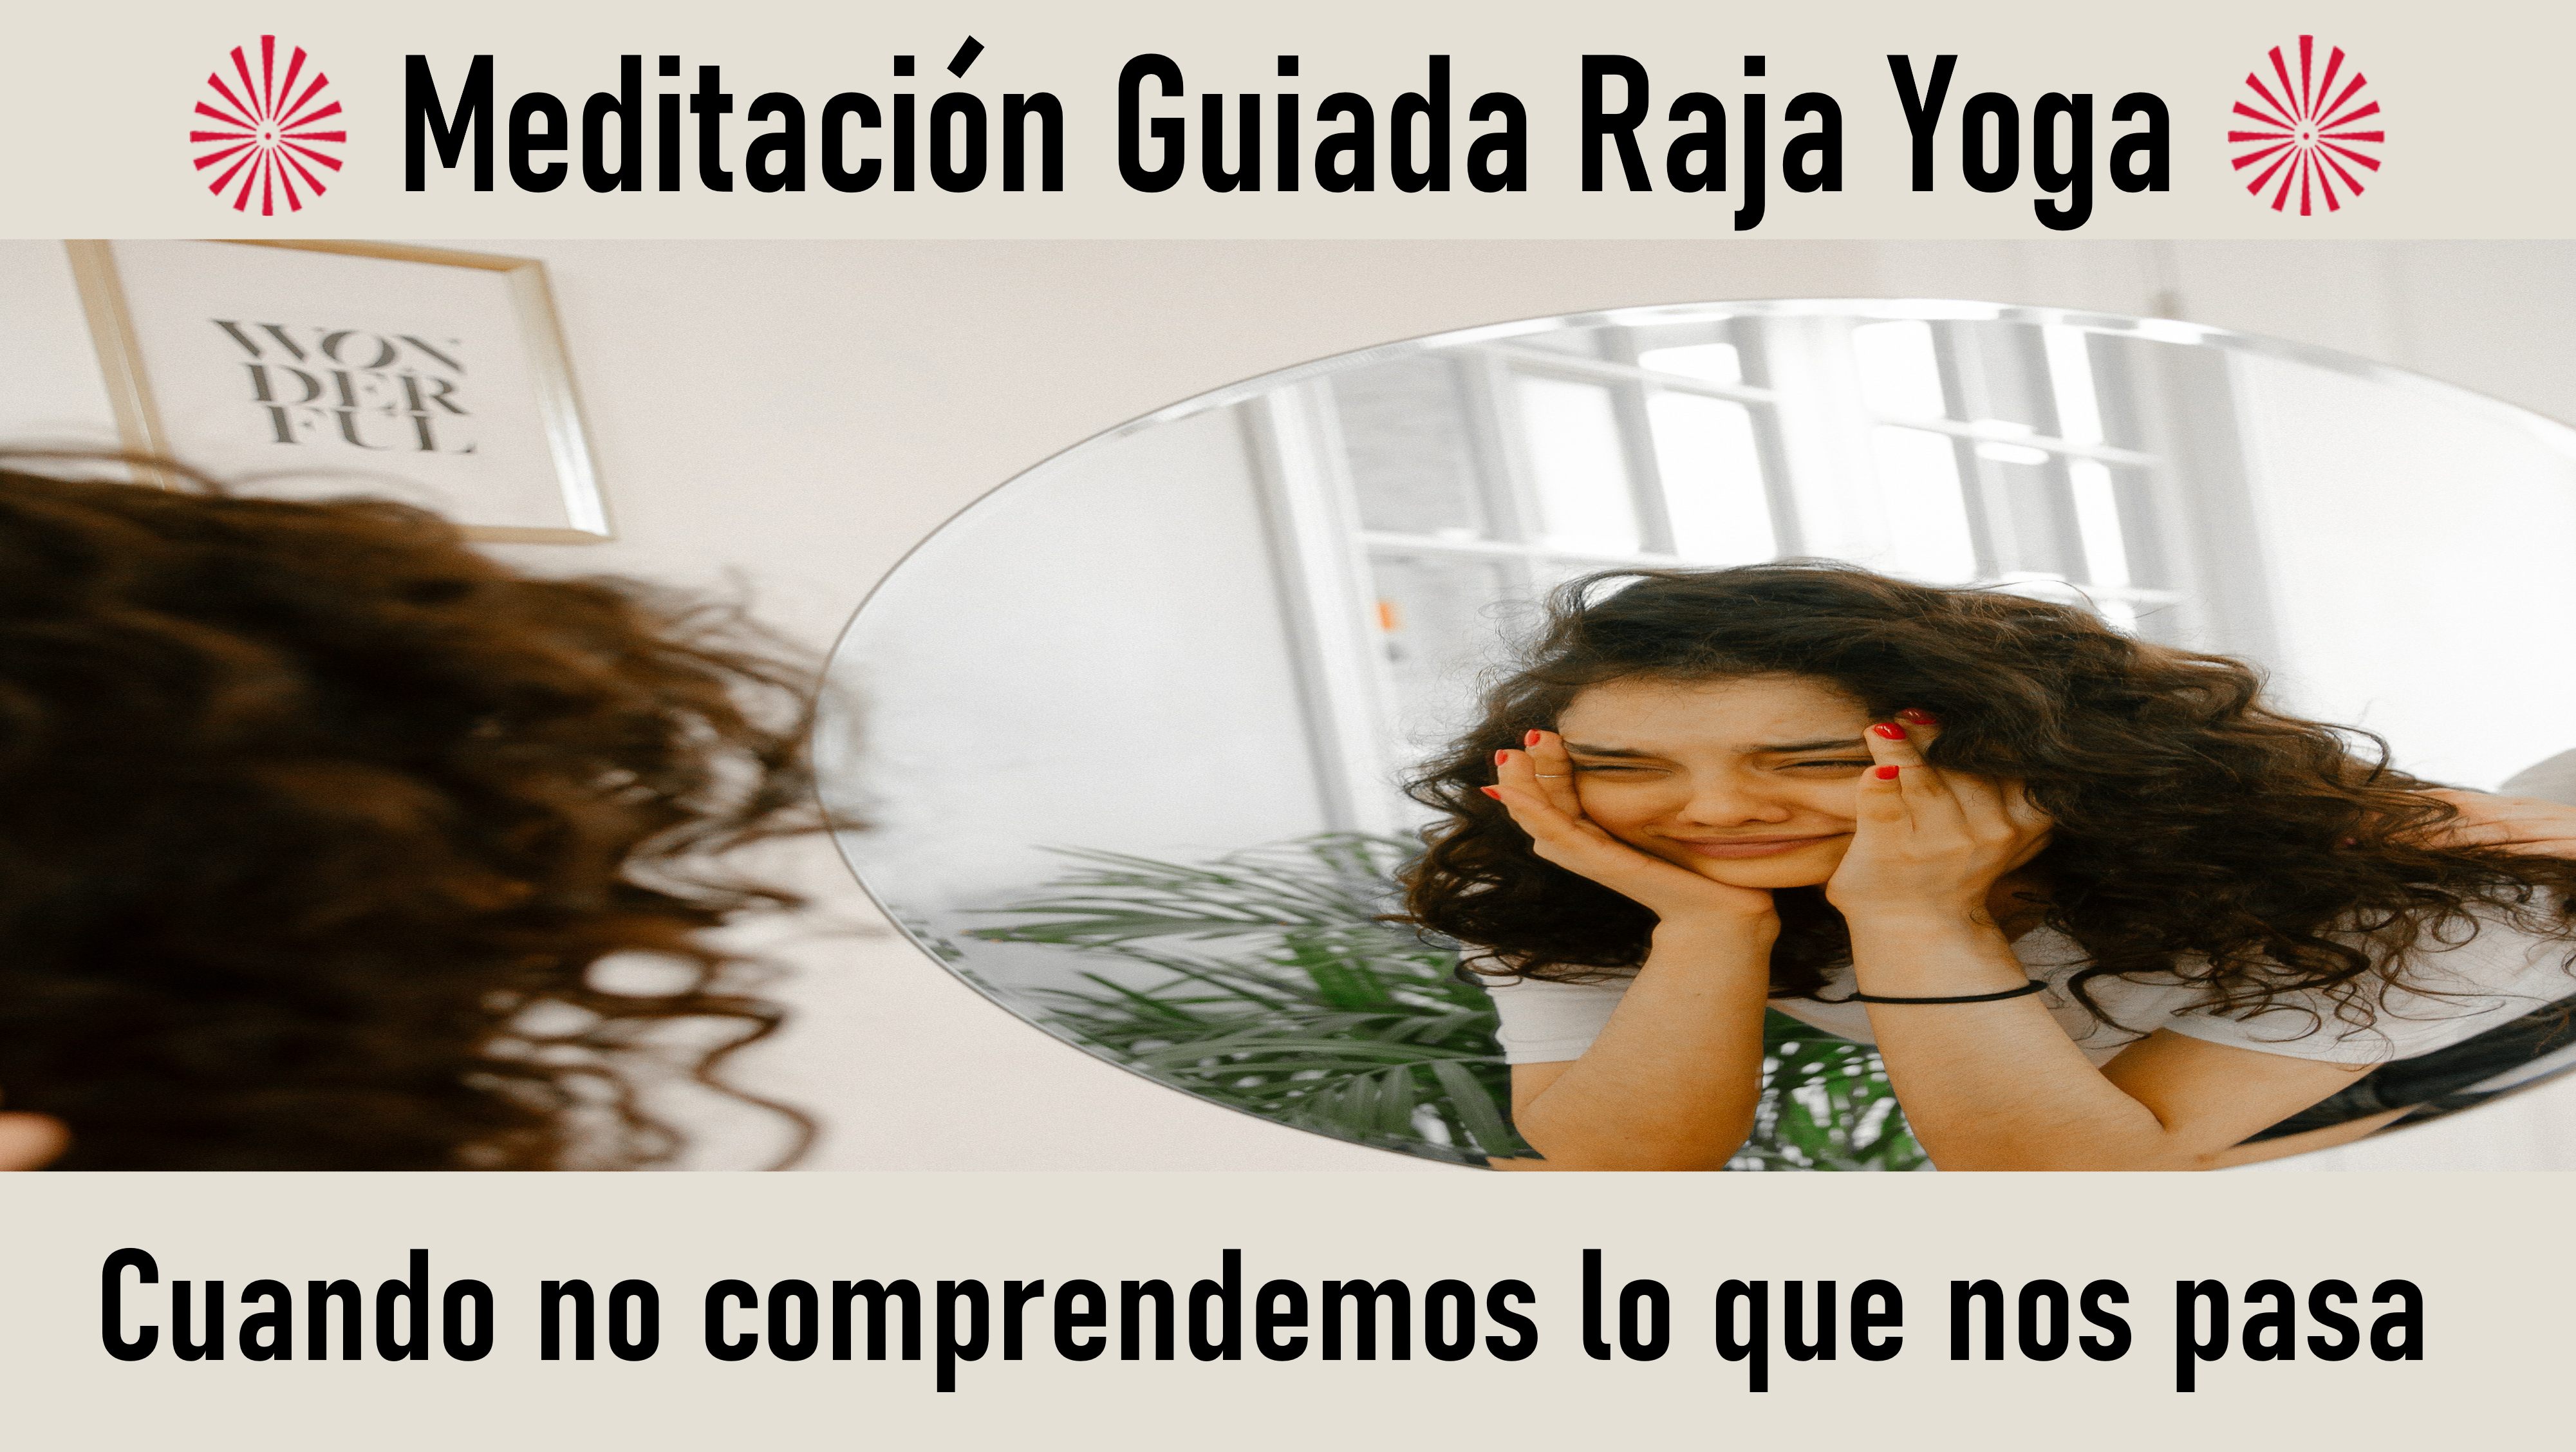 Meditación Raja Yoga: Cuando no comprendemos lo que nos pasa (19 Septiembre 2020) On-line desde Valencia